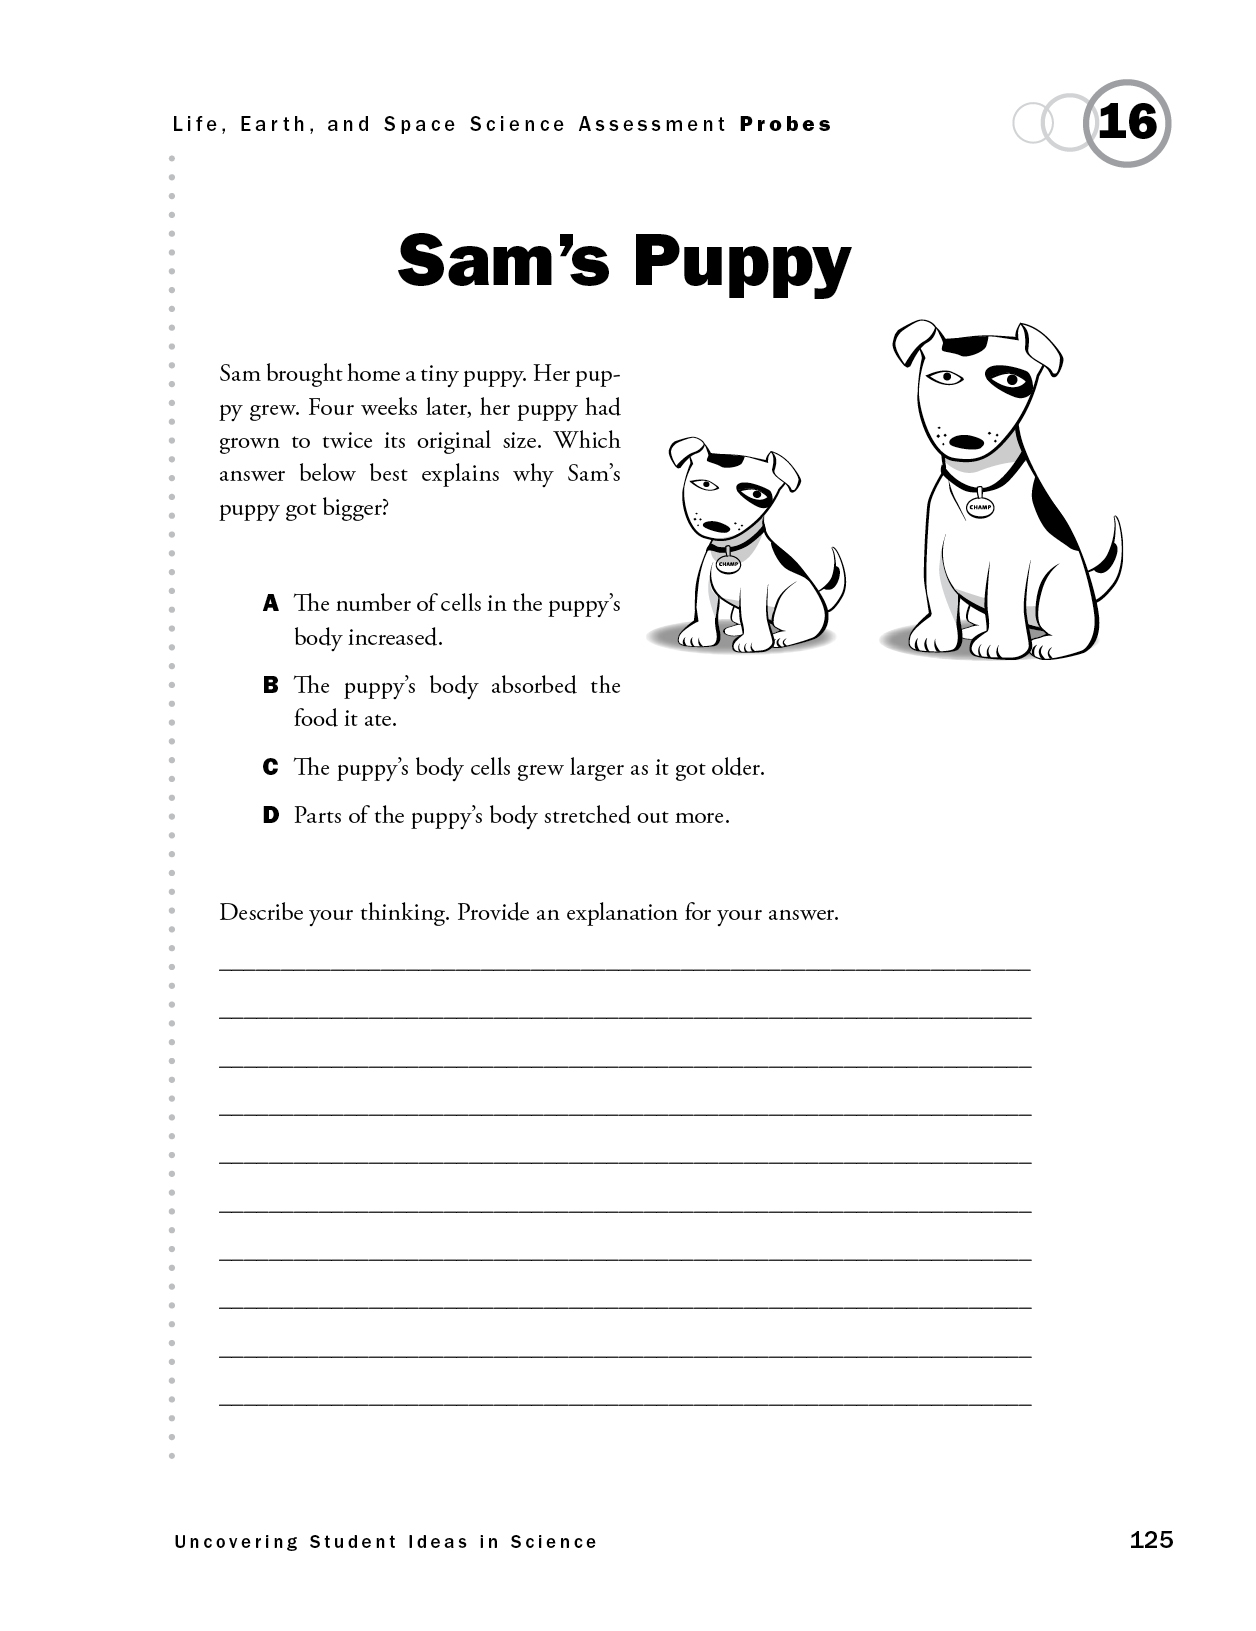 Sam's Puppy